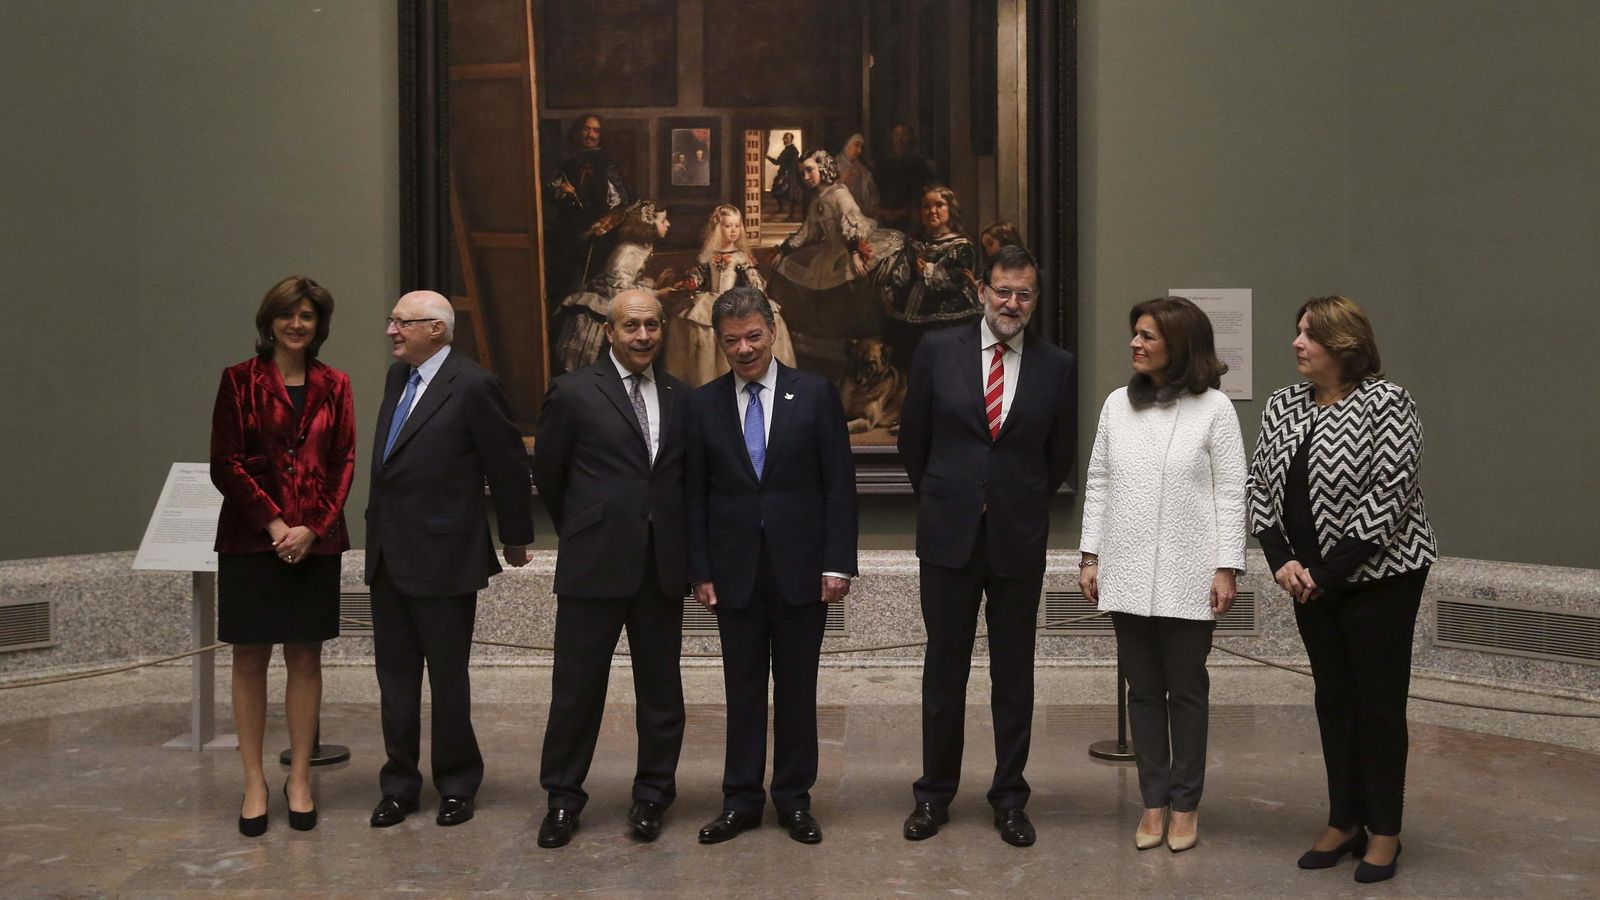 Foto: El presidente de Colombia, Juan Manuel Santos, entre Mariano Rajoy y José Ignacio Wert, posan delante de 'Las meninas', en El Prado, el pasado martes. (EFE)